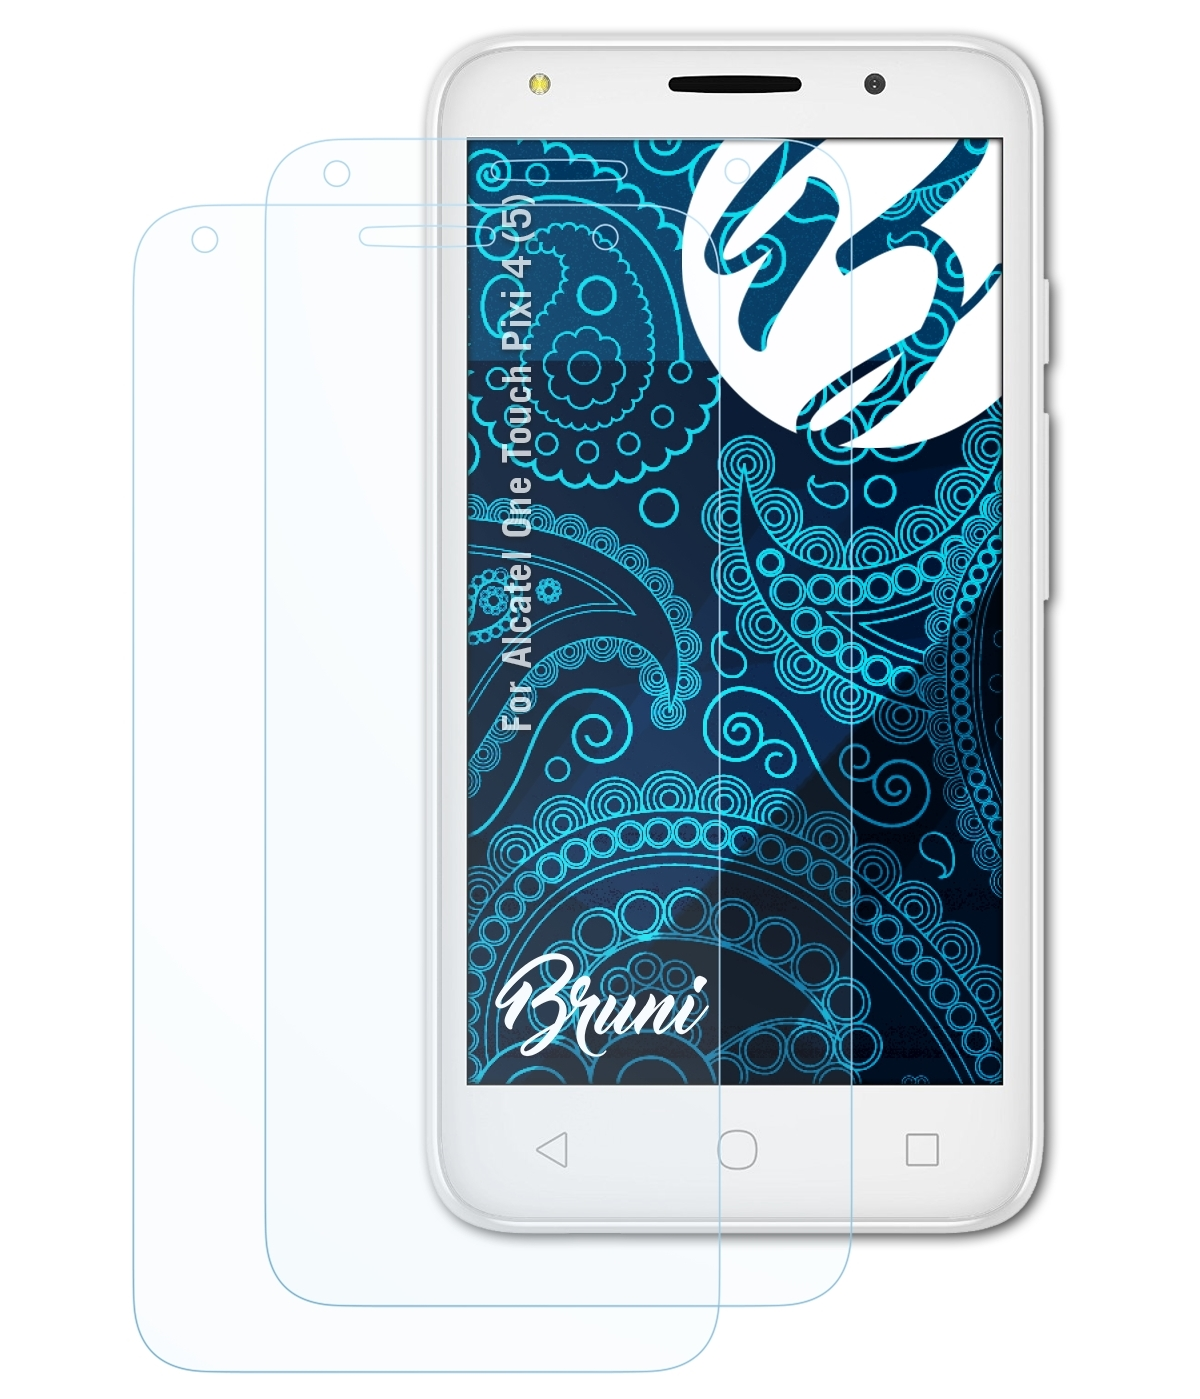 BRUNI 2x Schutzfolie(für Basics-Clear One (5)) 4 Pixi Alcatel Touch